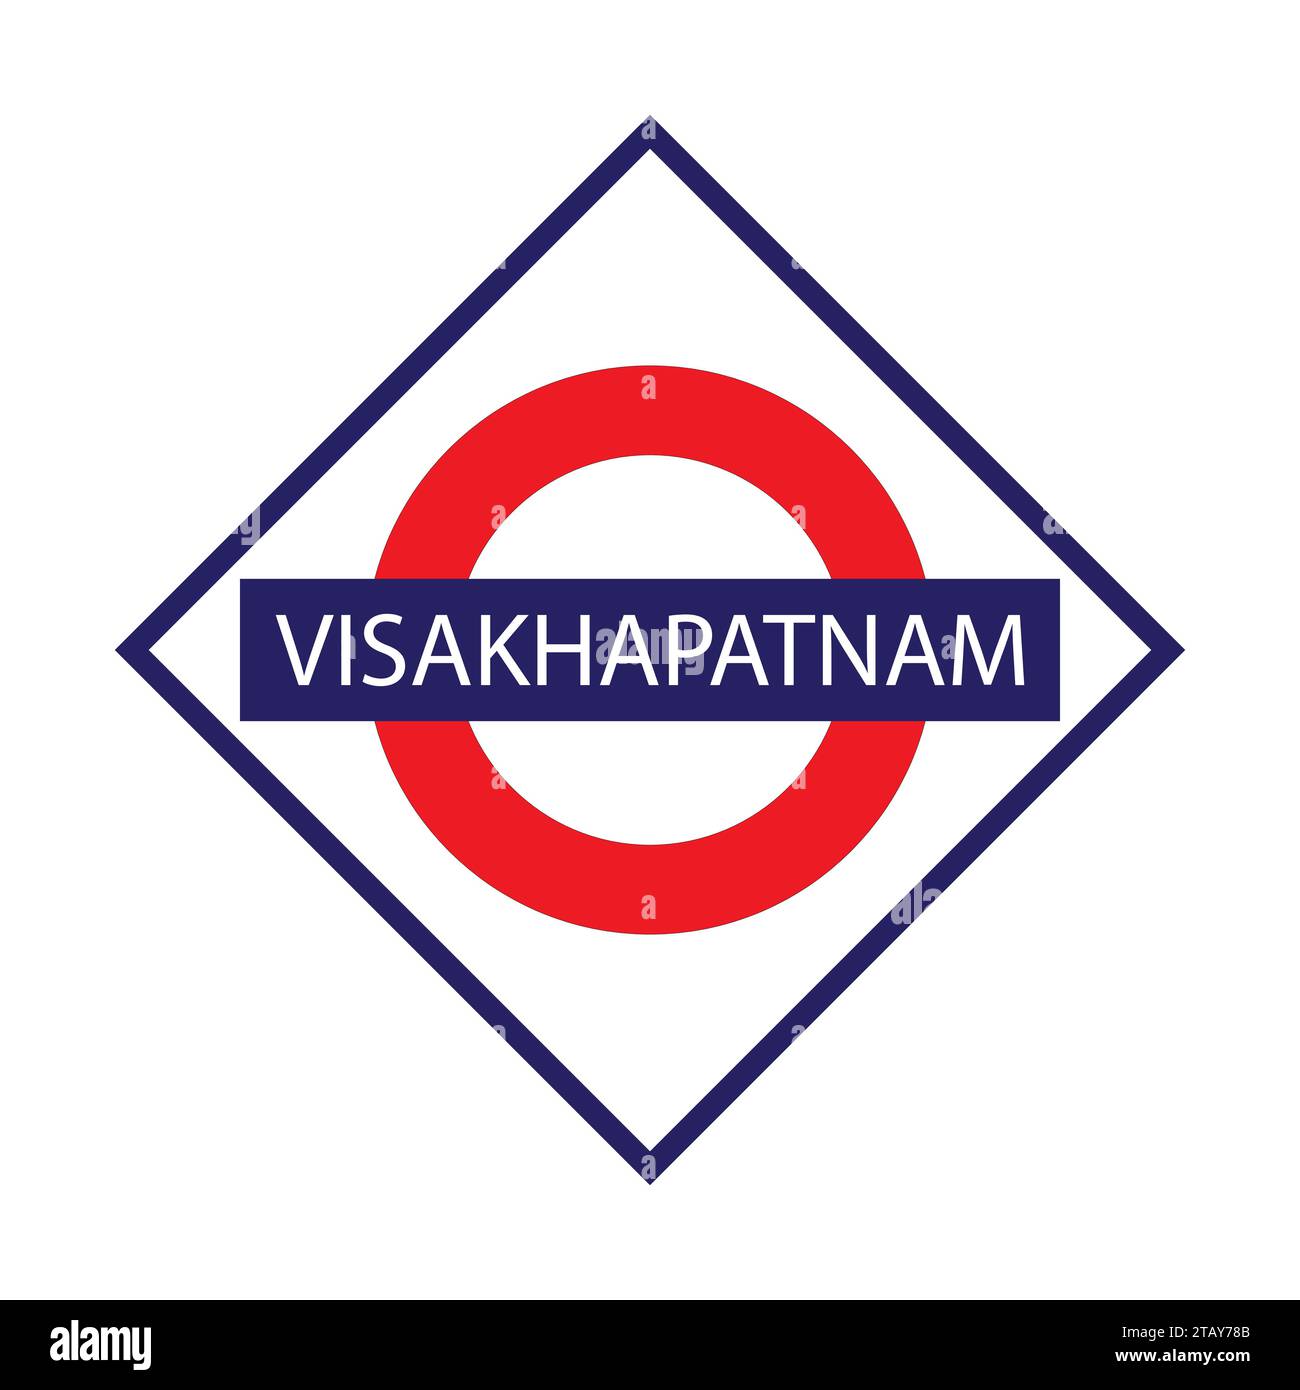 Visakhapatnam Junction Railways Namensschild isoliert auf weiß Stock Vektor